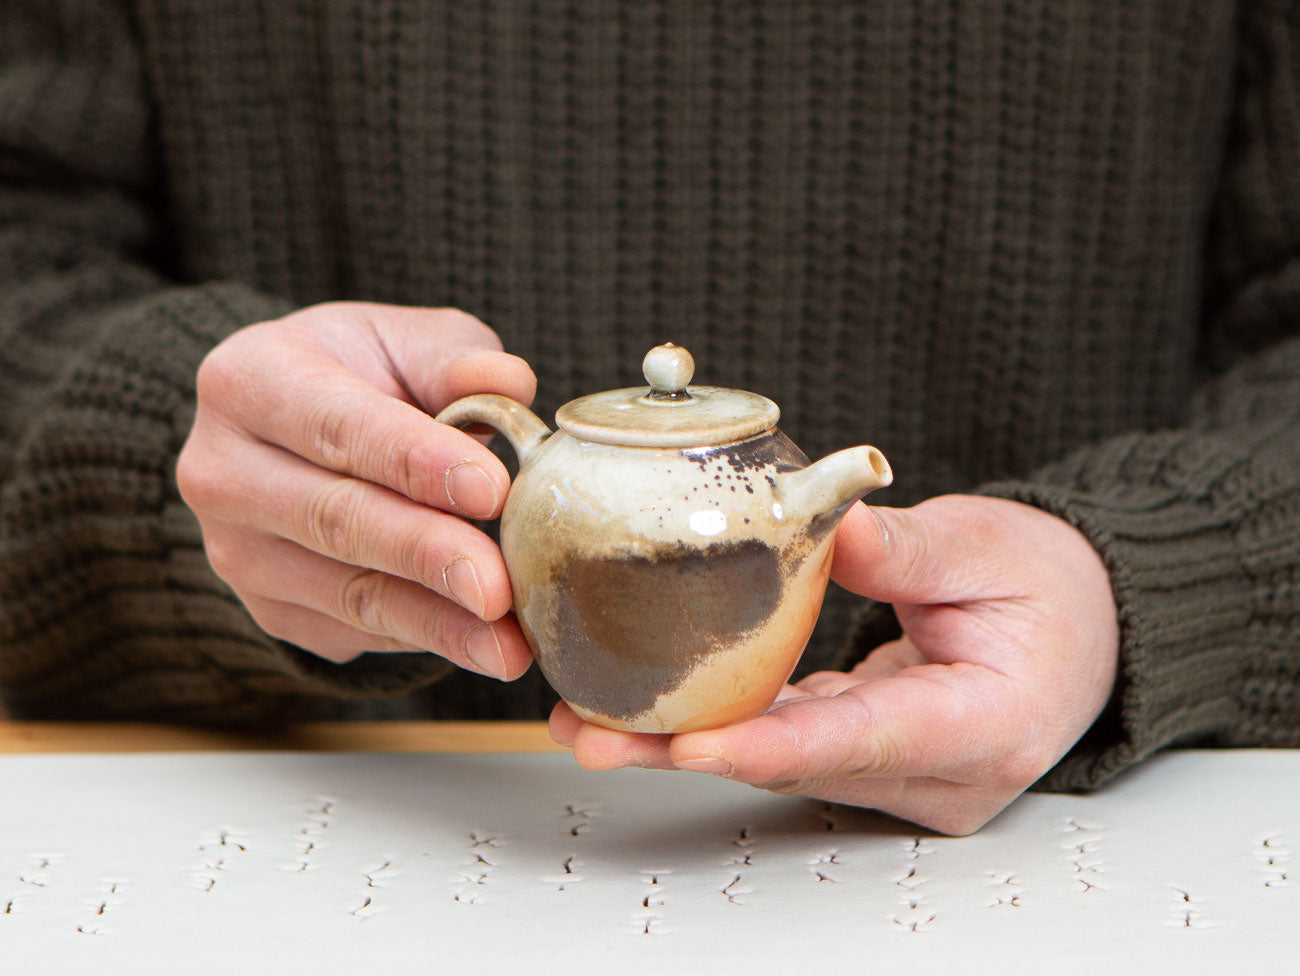 Wood-fired Porcelain Teapot, Liao Guo Hua.